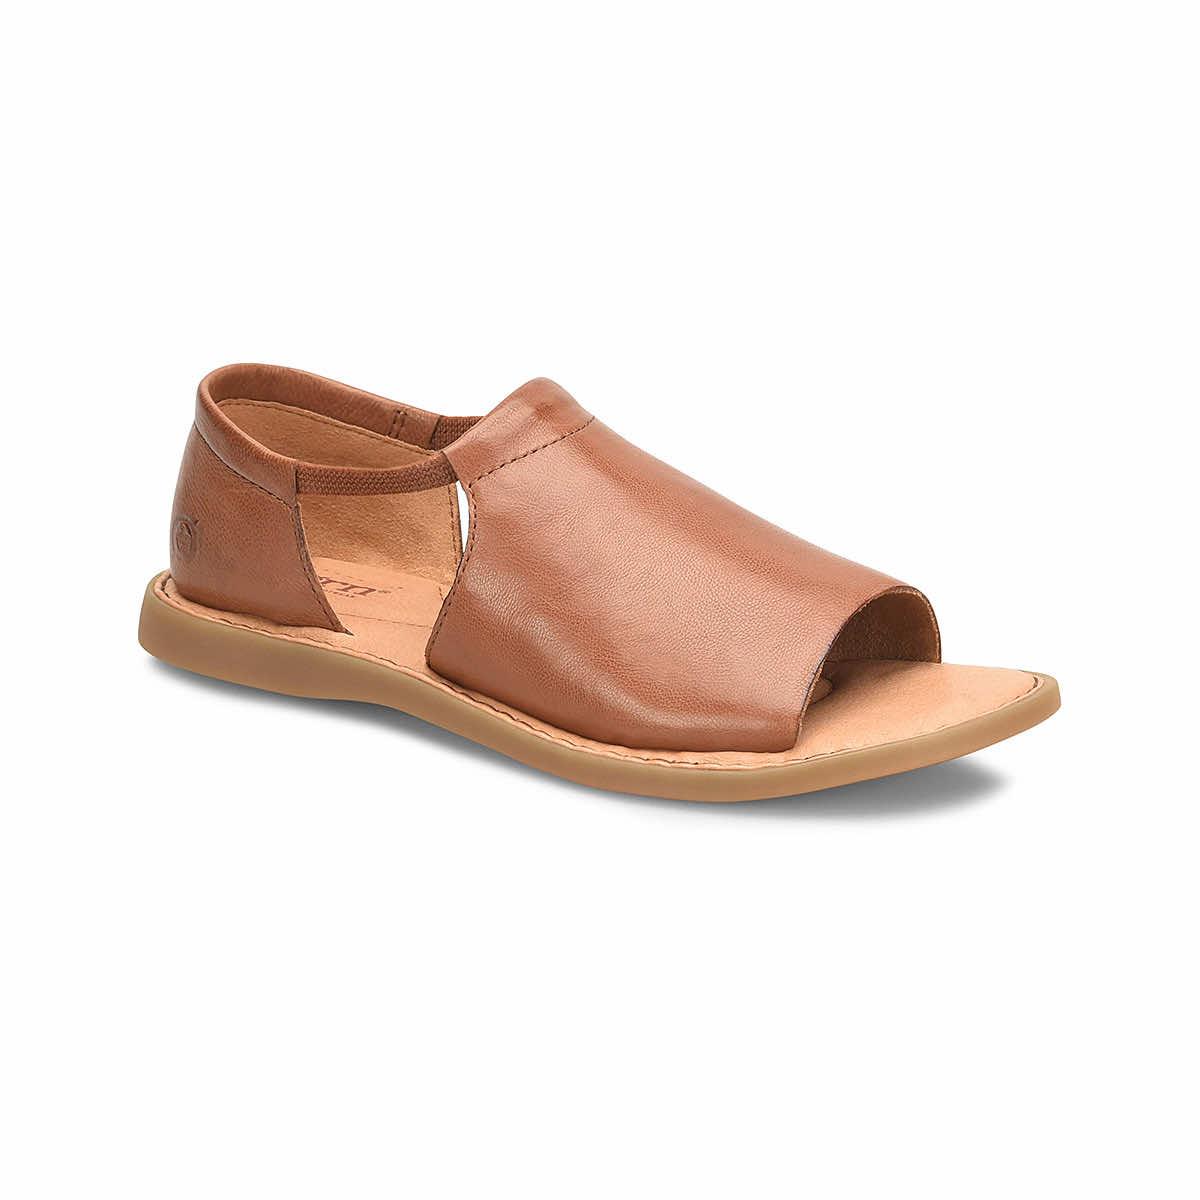  Women's Cove Modern Sandals